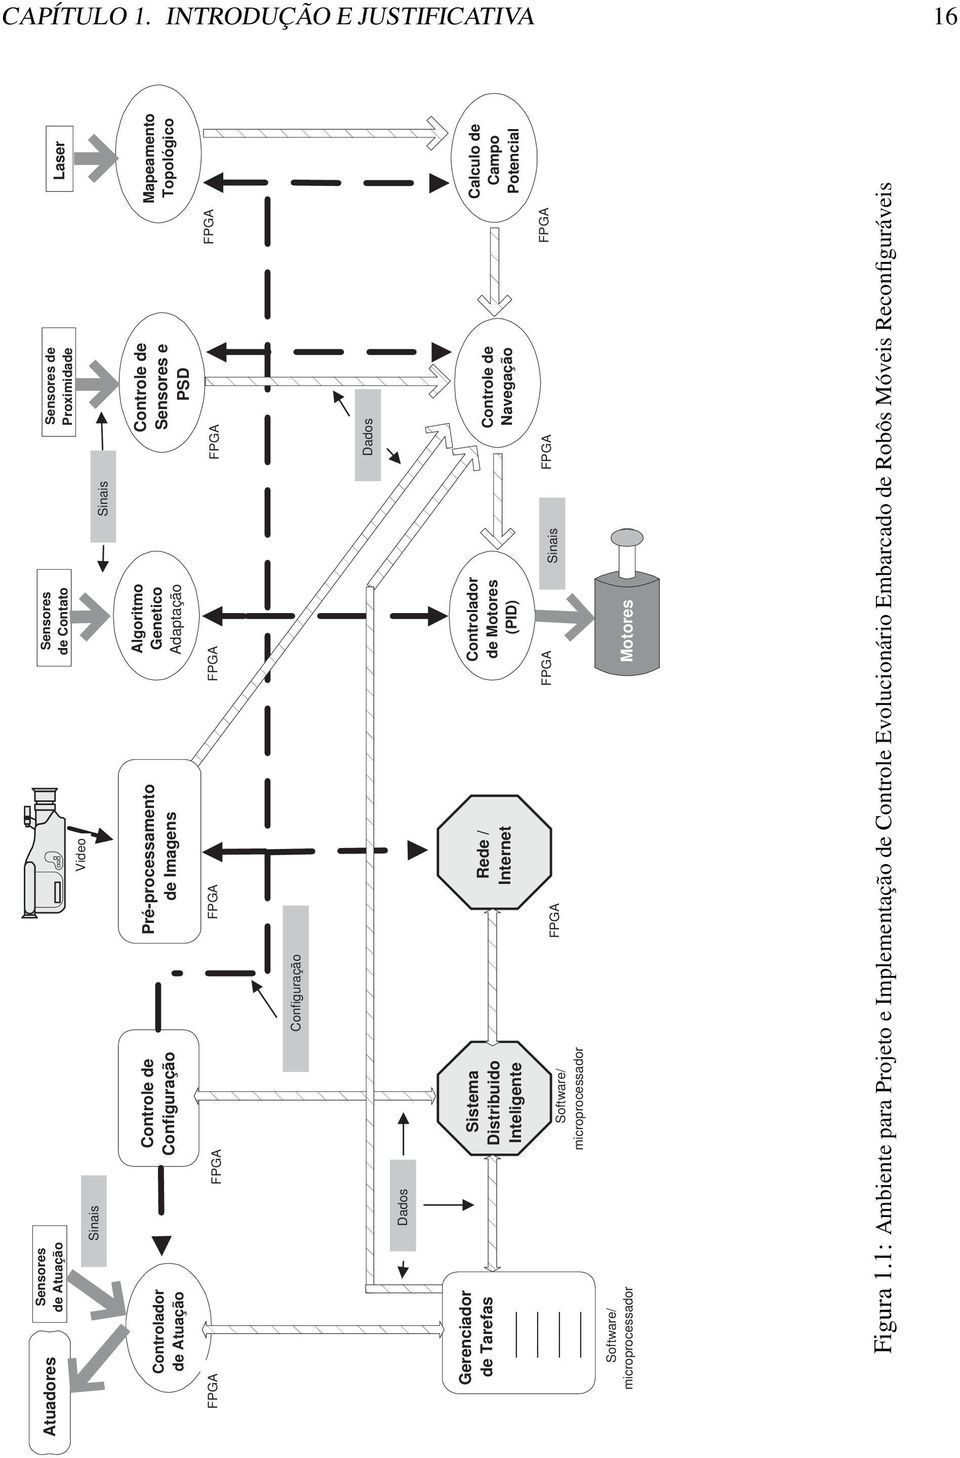 Tarefas Controle de Configuração ; ; ; Sistema Distribuido Inteligente Configuração Rede / Internet Algoritmo Genetico Adaptação ;;;;;; ;;;; Dados Software/ microprocessador